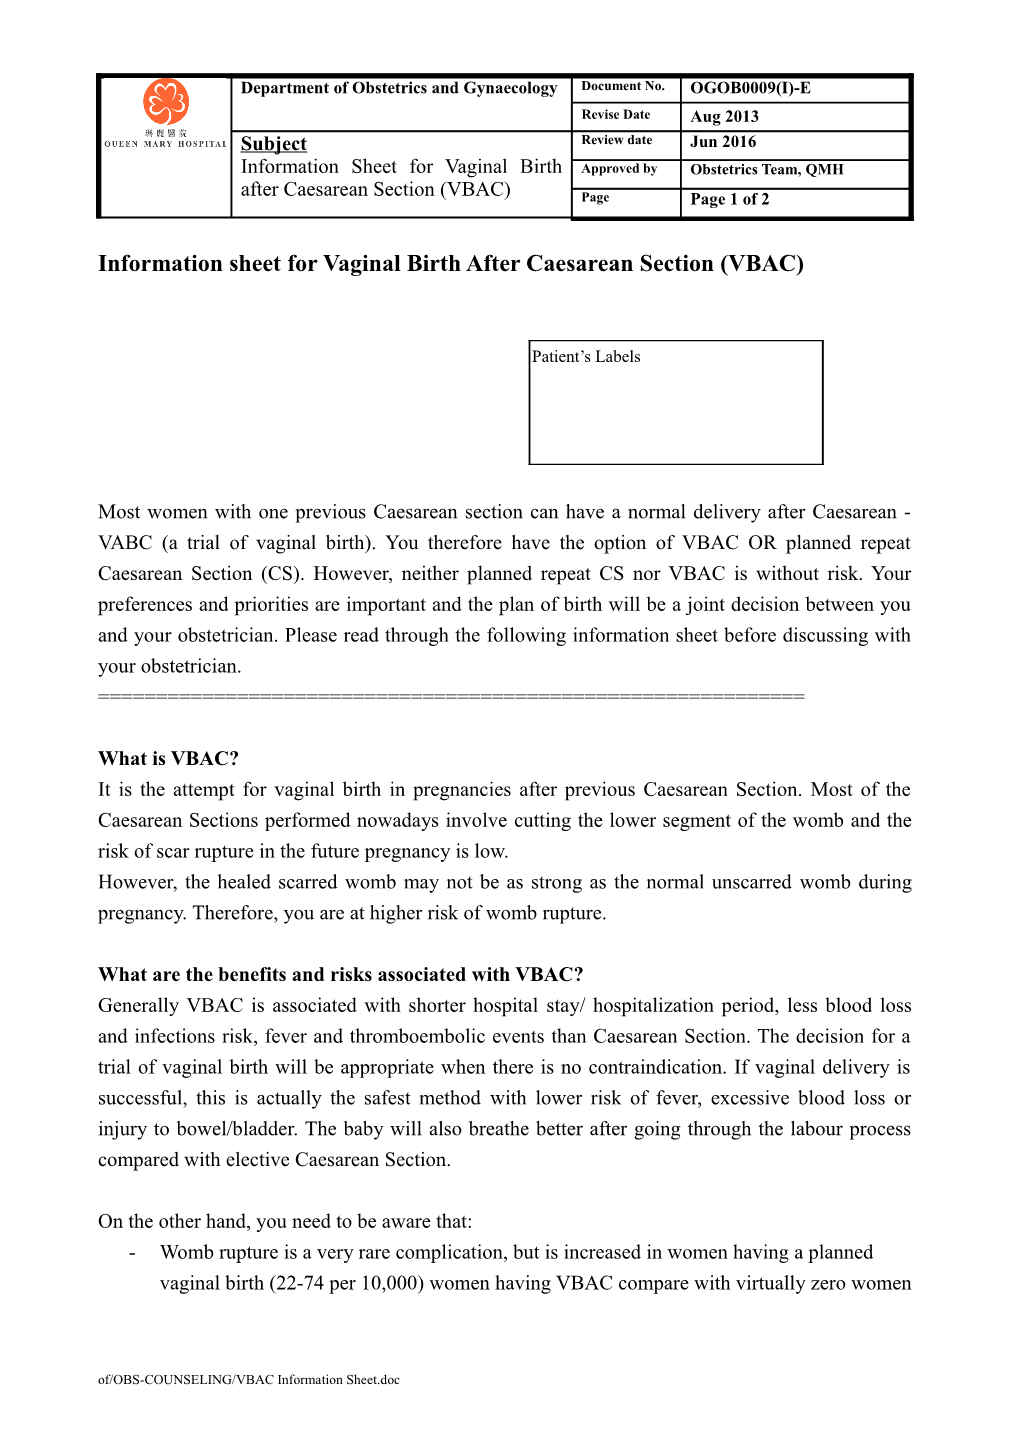 Information Sheet for VBAC